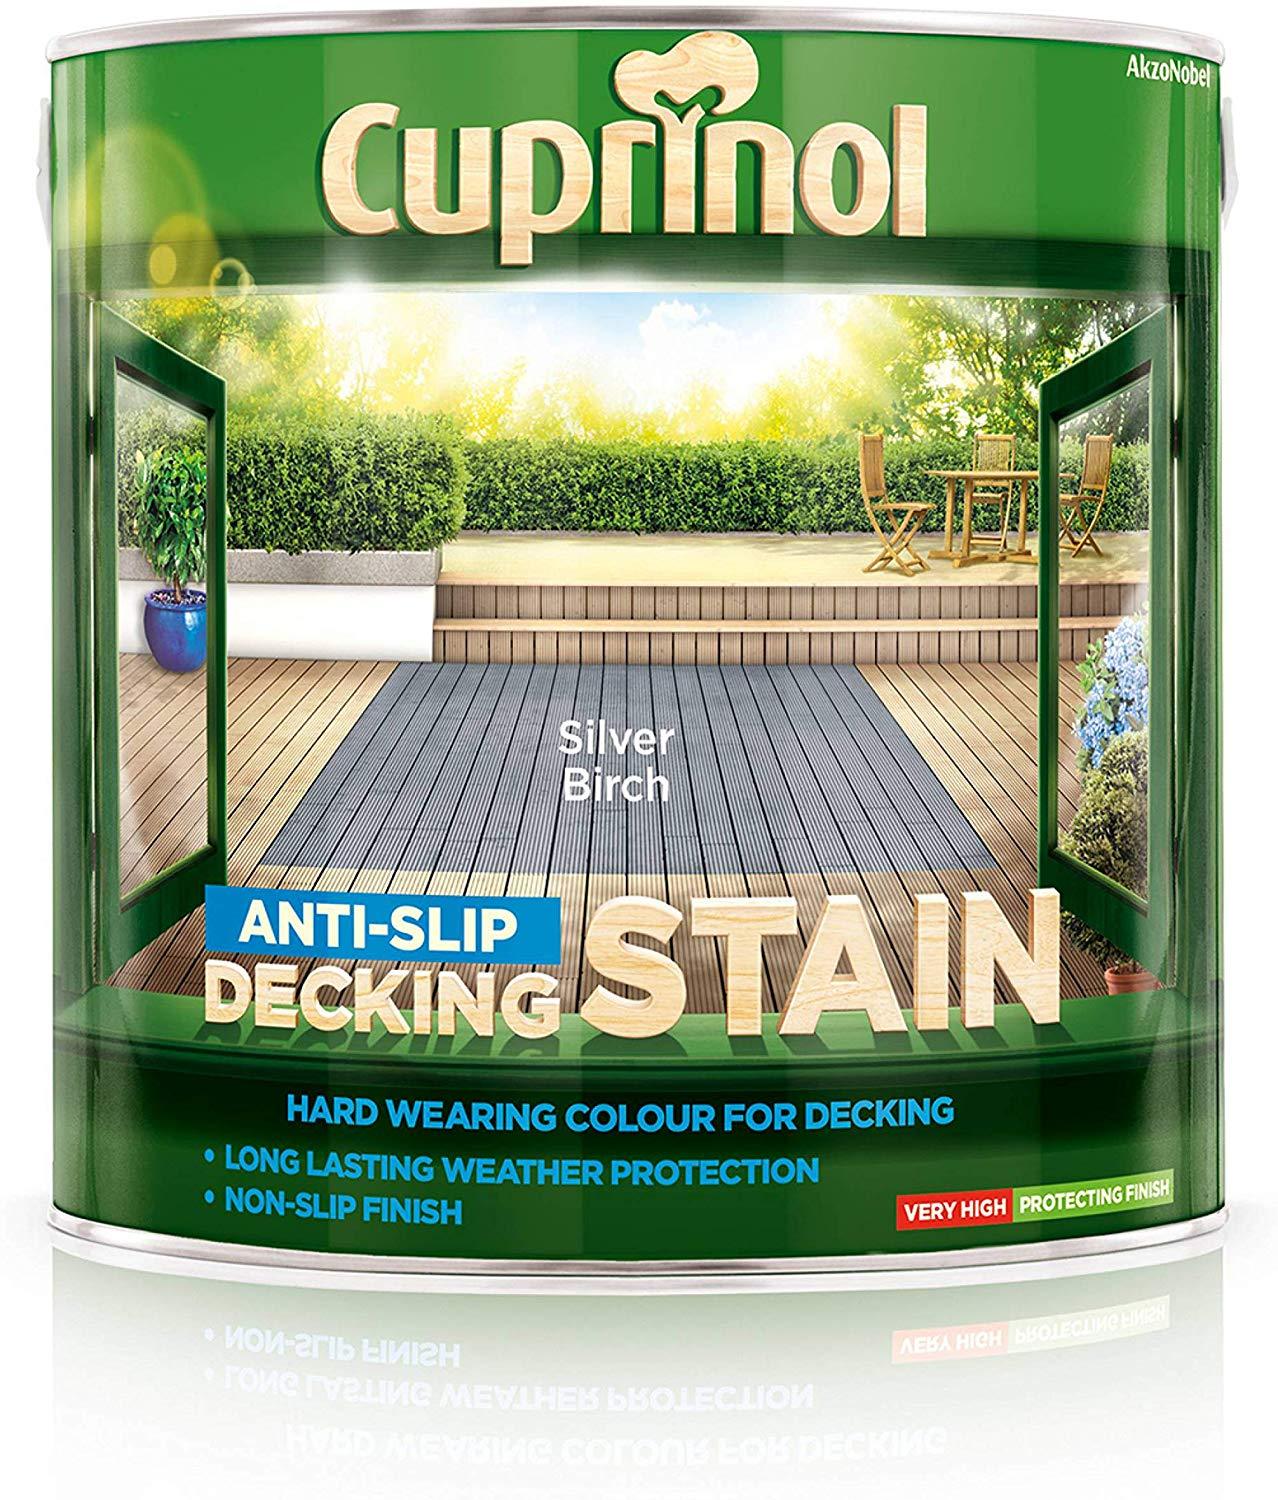 Cuprinol Anti Slip Decking Stain - Silver Birch 2.5L Garden & Diy Home Improvements Painting